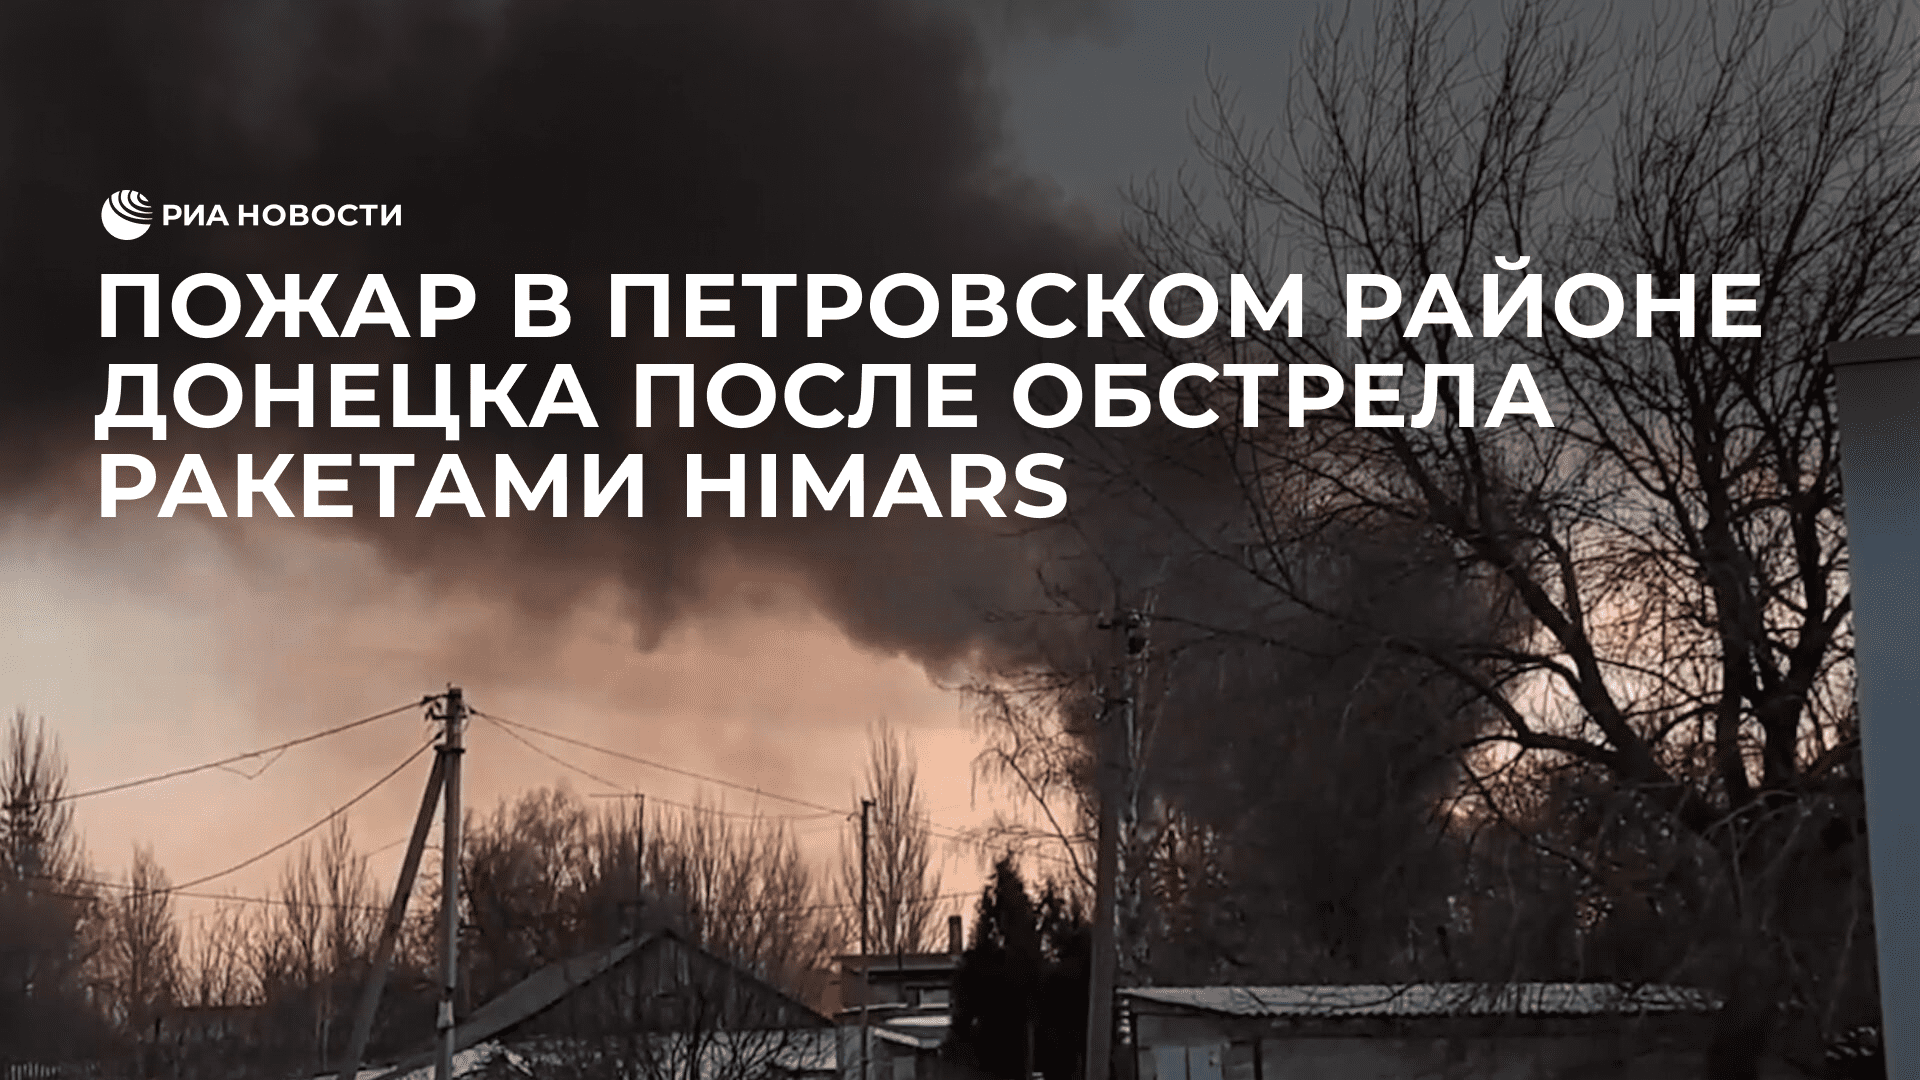 Пожар в Петровском районе Донецка после обстрела ракетами HIMARS